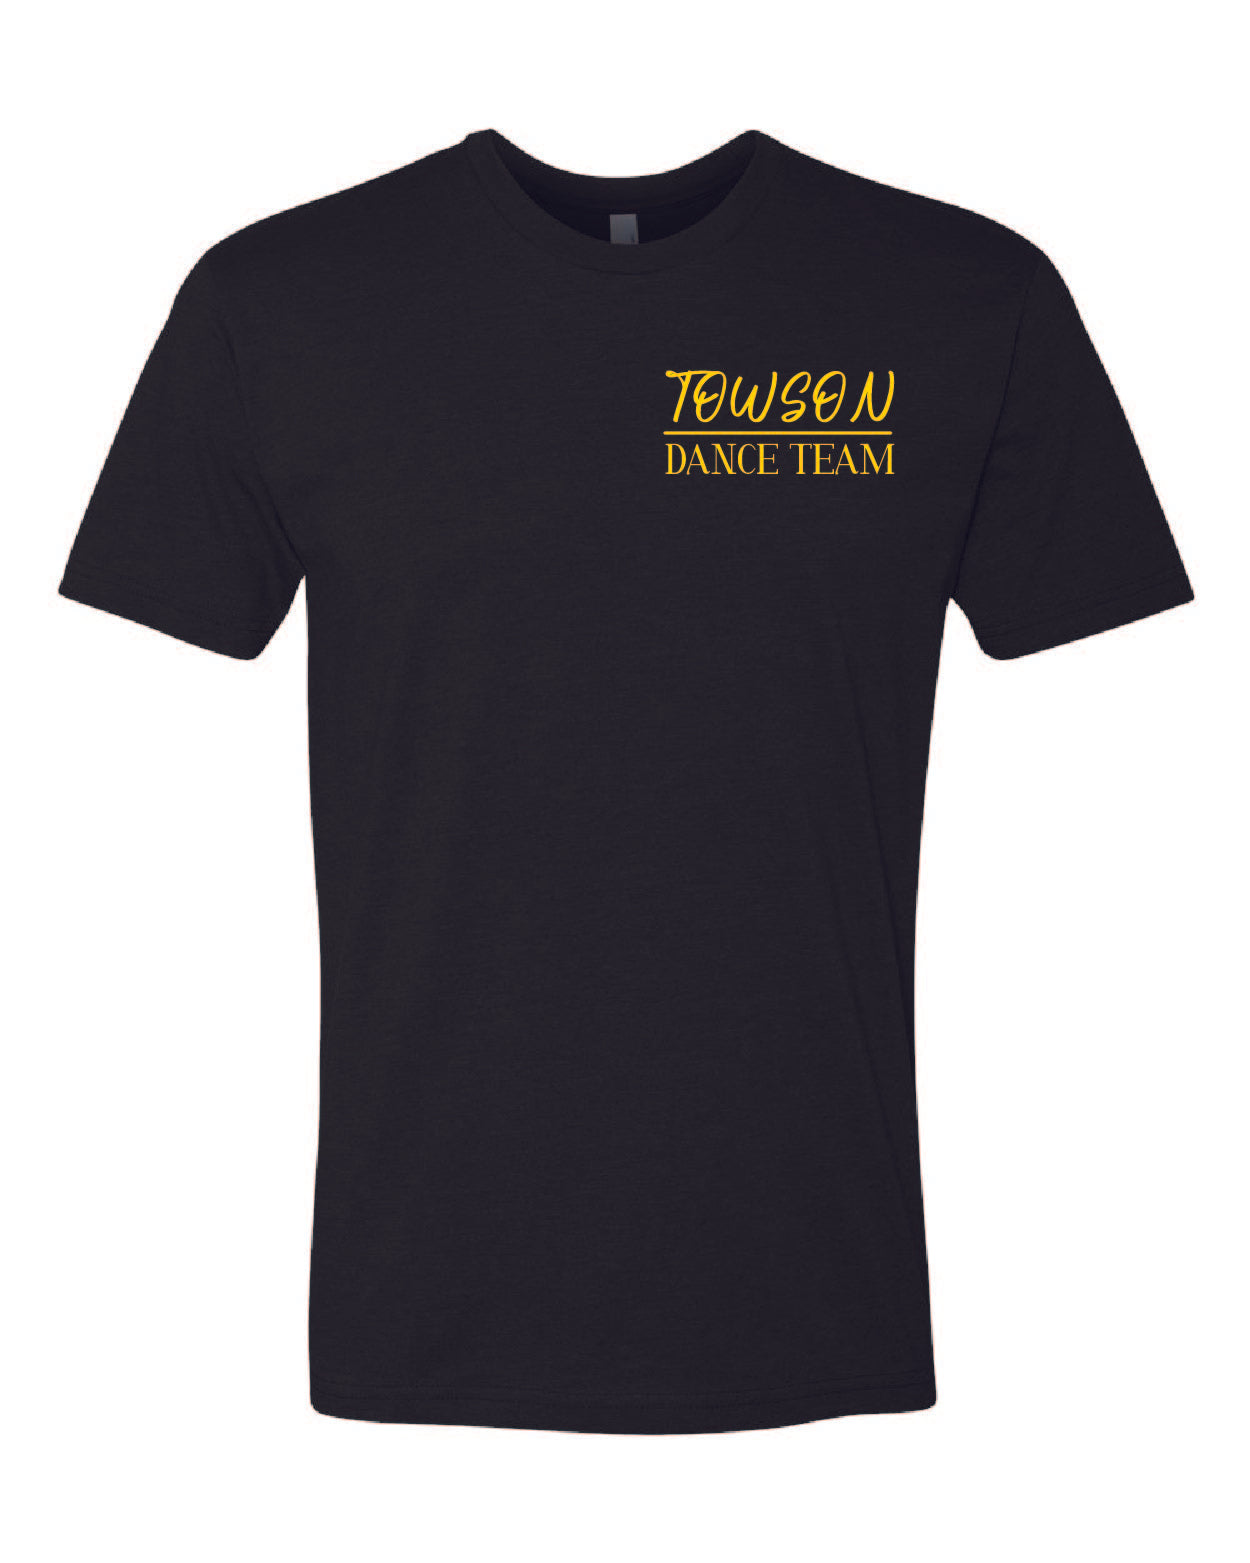 Towson black premium t-shirt